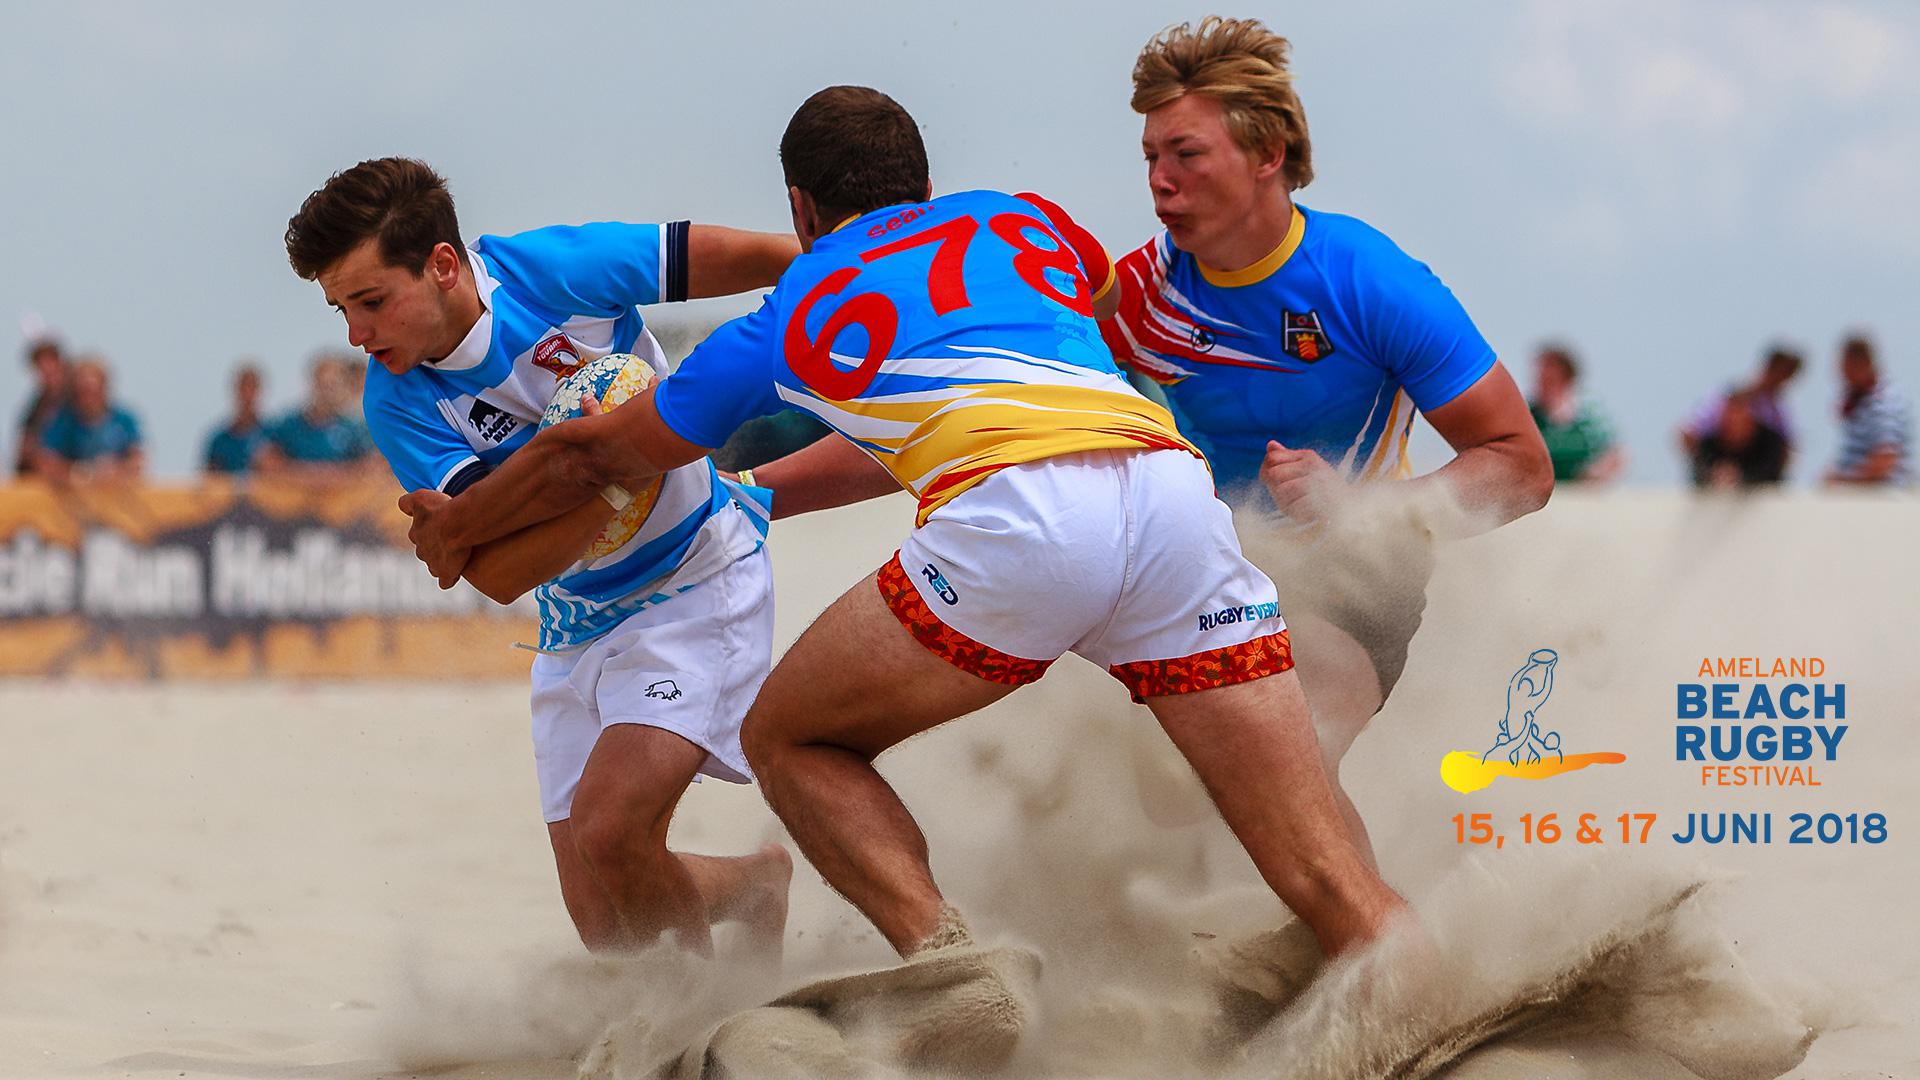 Ameland Beach Rugby Festival 2018